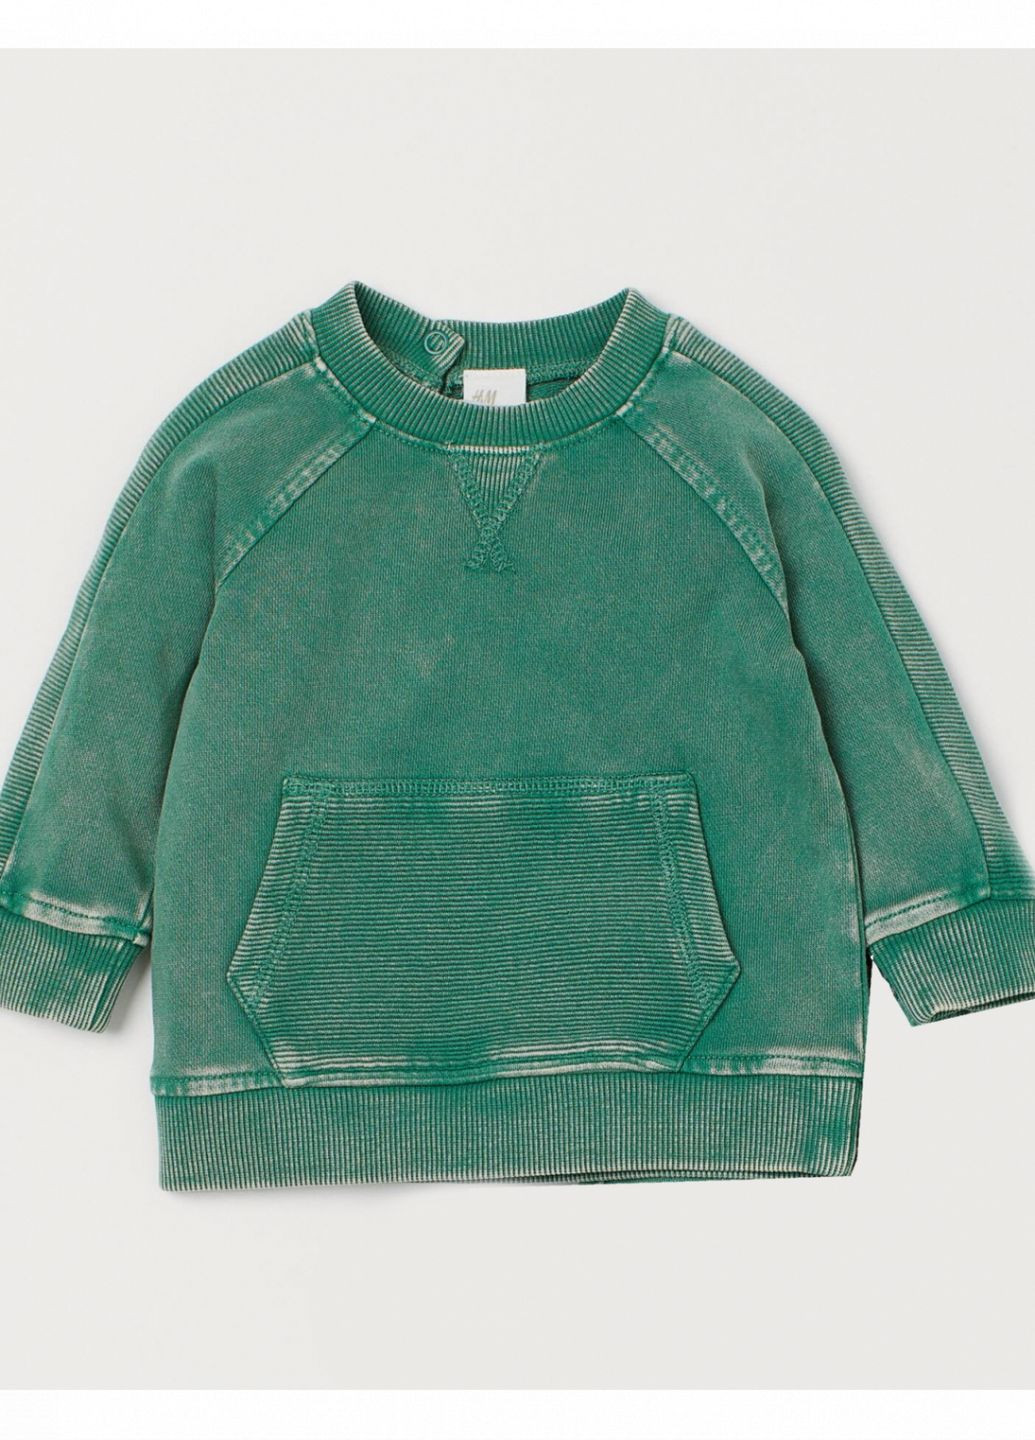 H&M свитшот двунитка для мальчика 0891726-003 однотонный зеленый повседневный, кэжуал хлопок